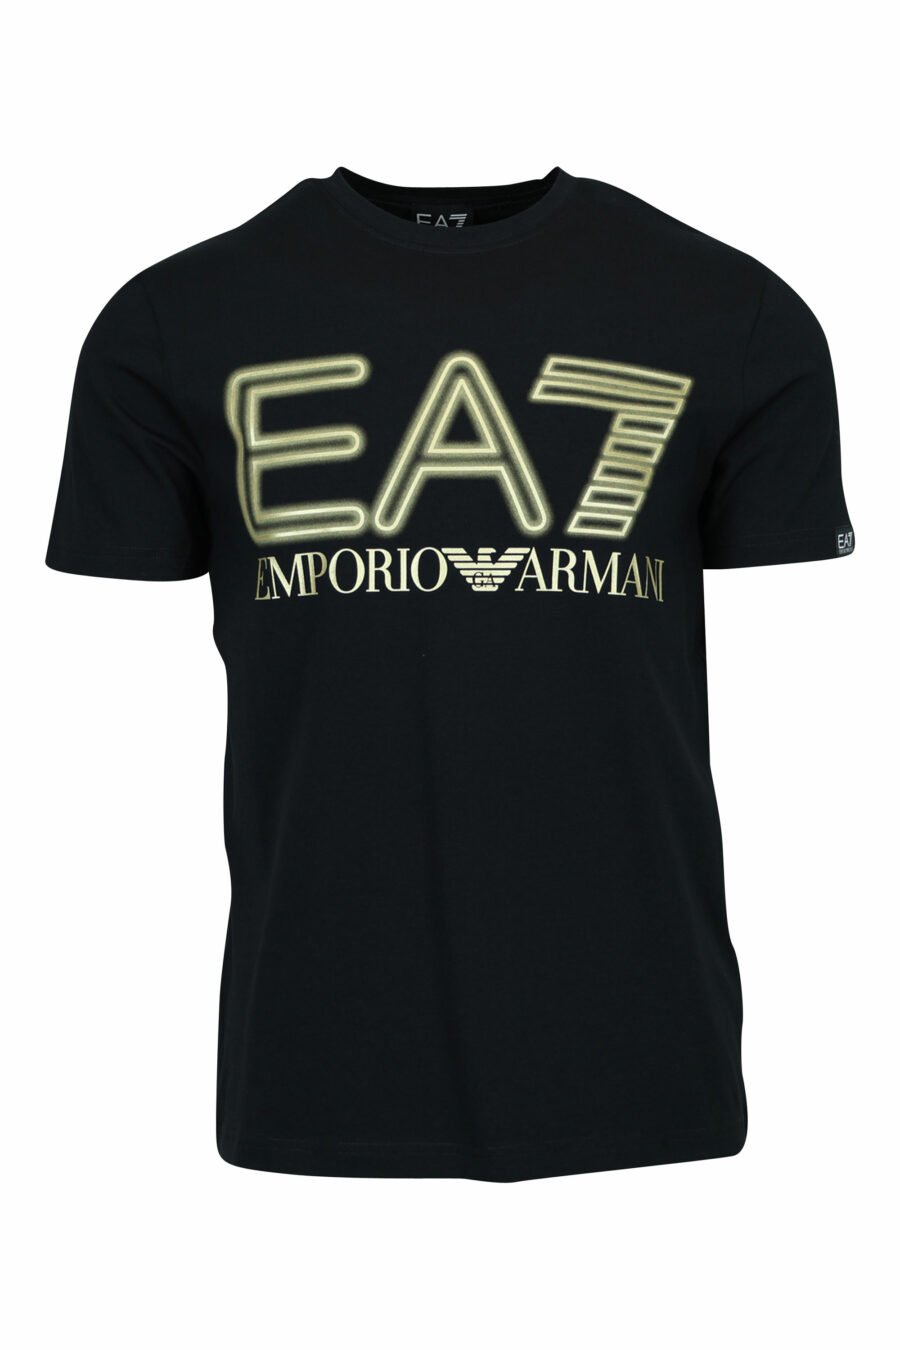 T-shirt preta com maxilogo "lux identity" em ouro néon - 8057970672234